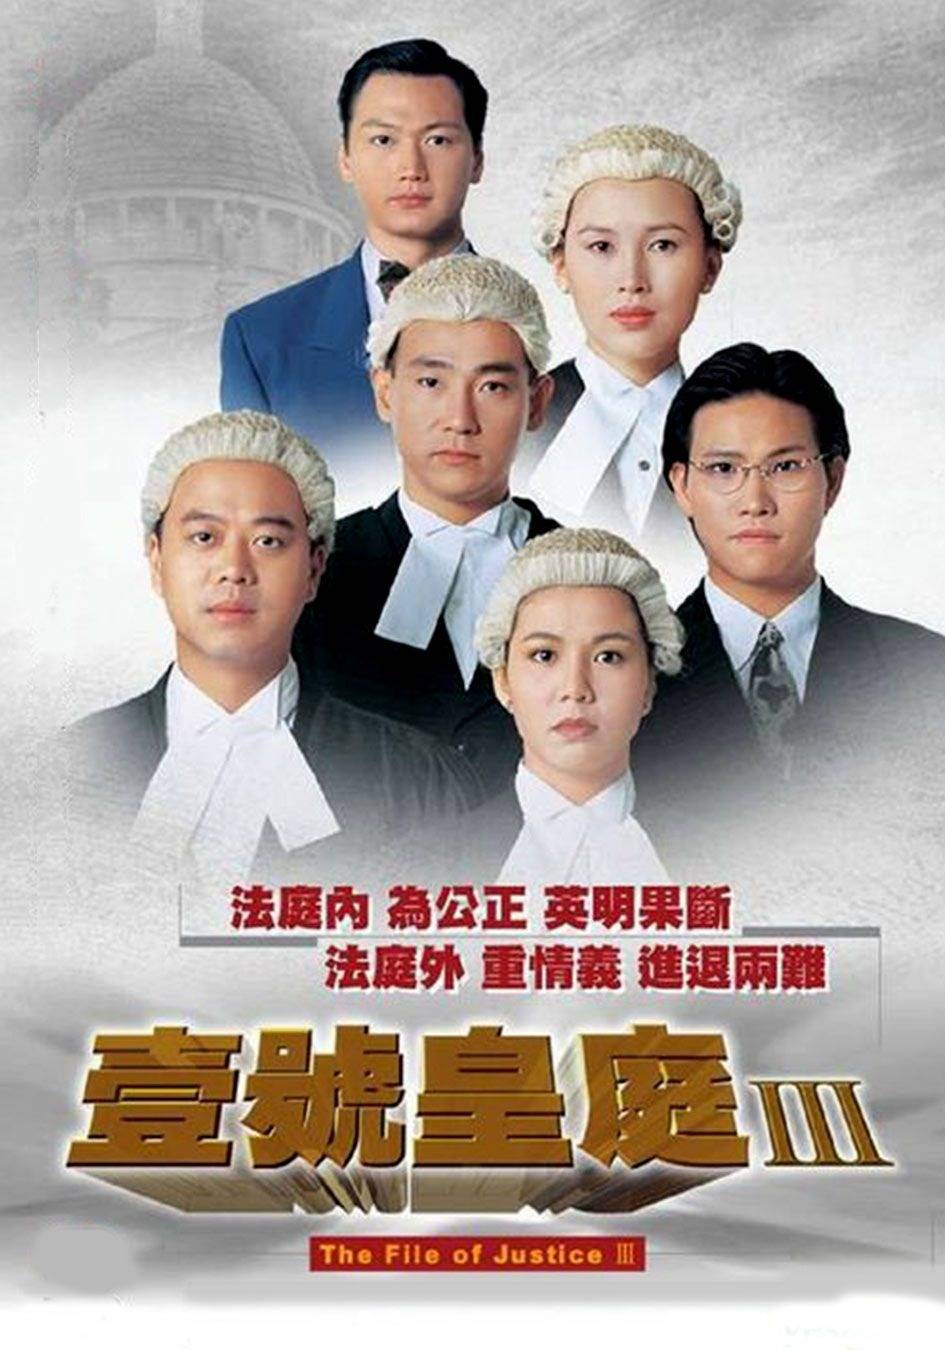 法与情 苏永康 法与情 壹号皇庭 《壹号皇庭》是TVB于1992年推出的剧集，一共推出了5部曲。